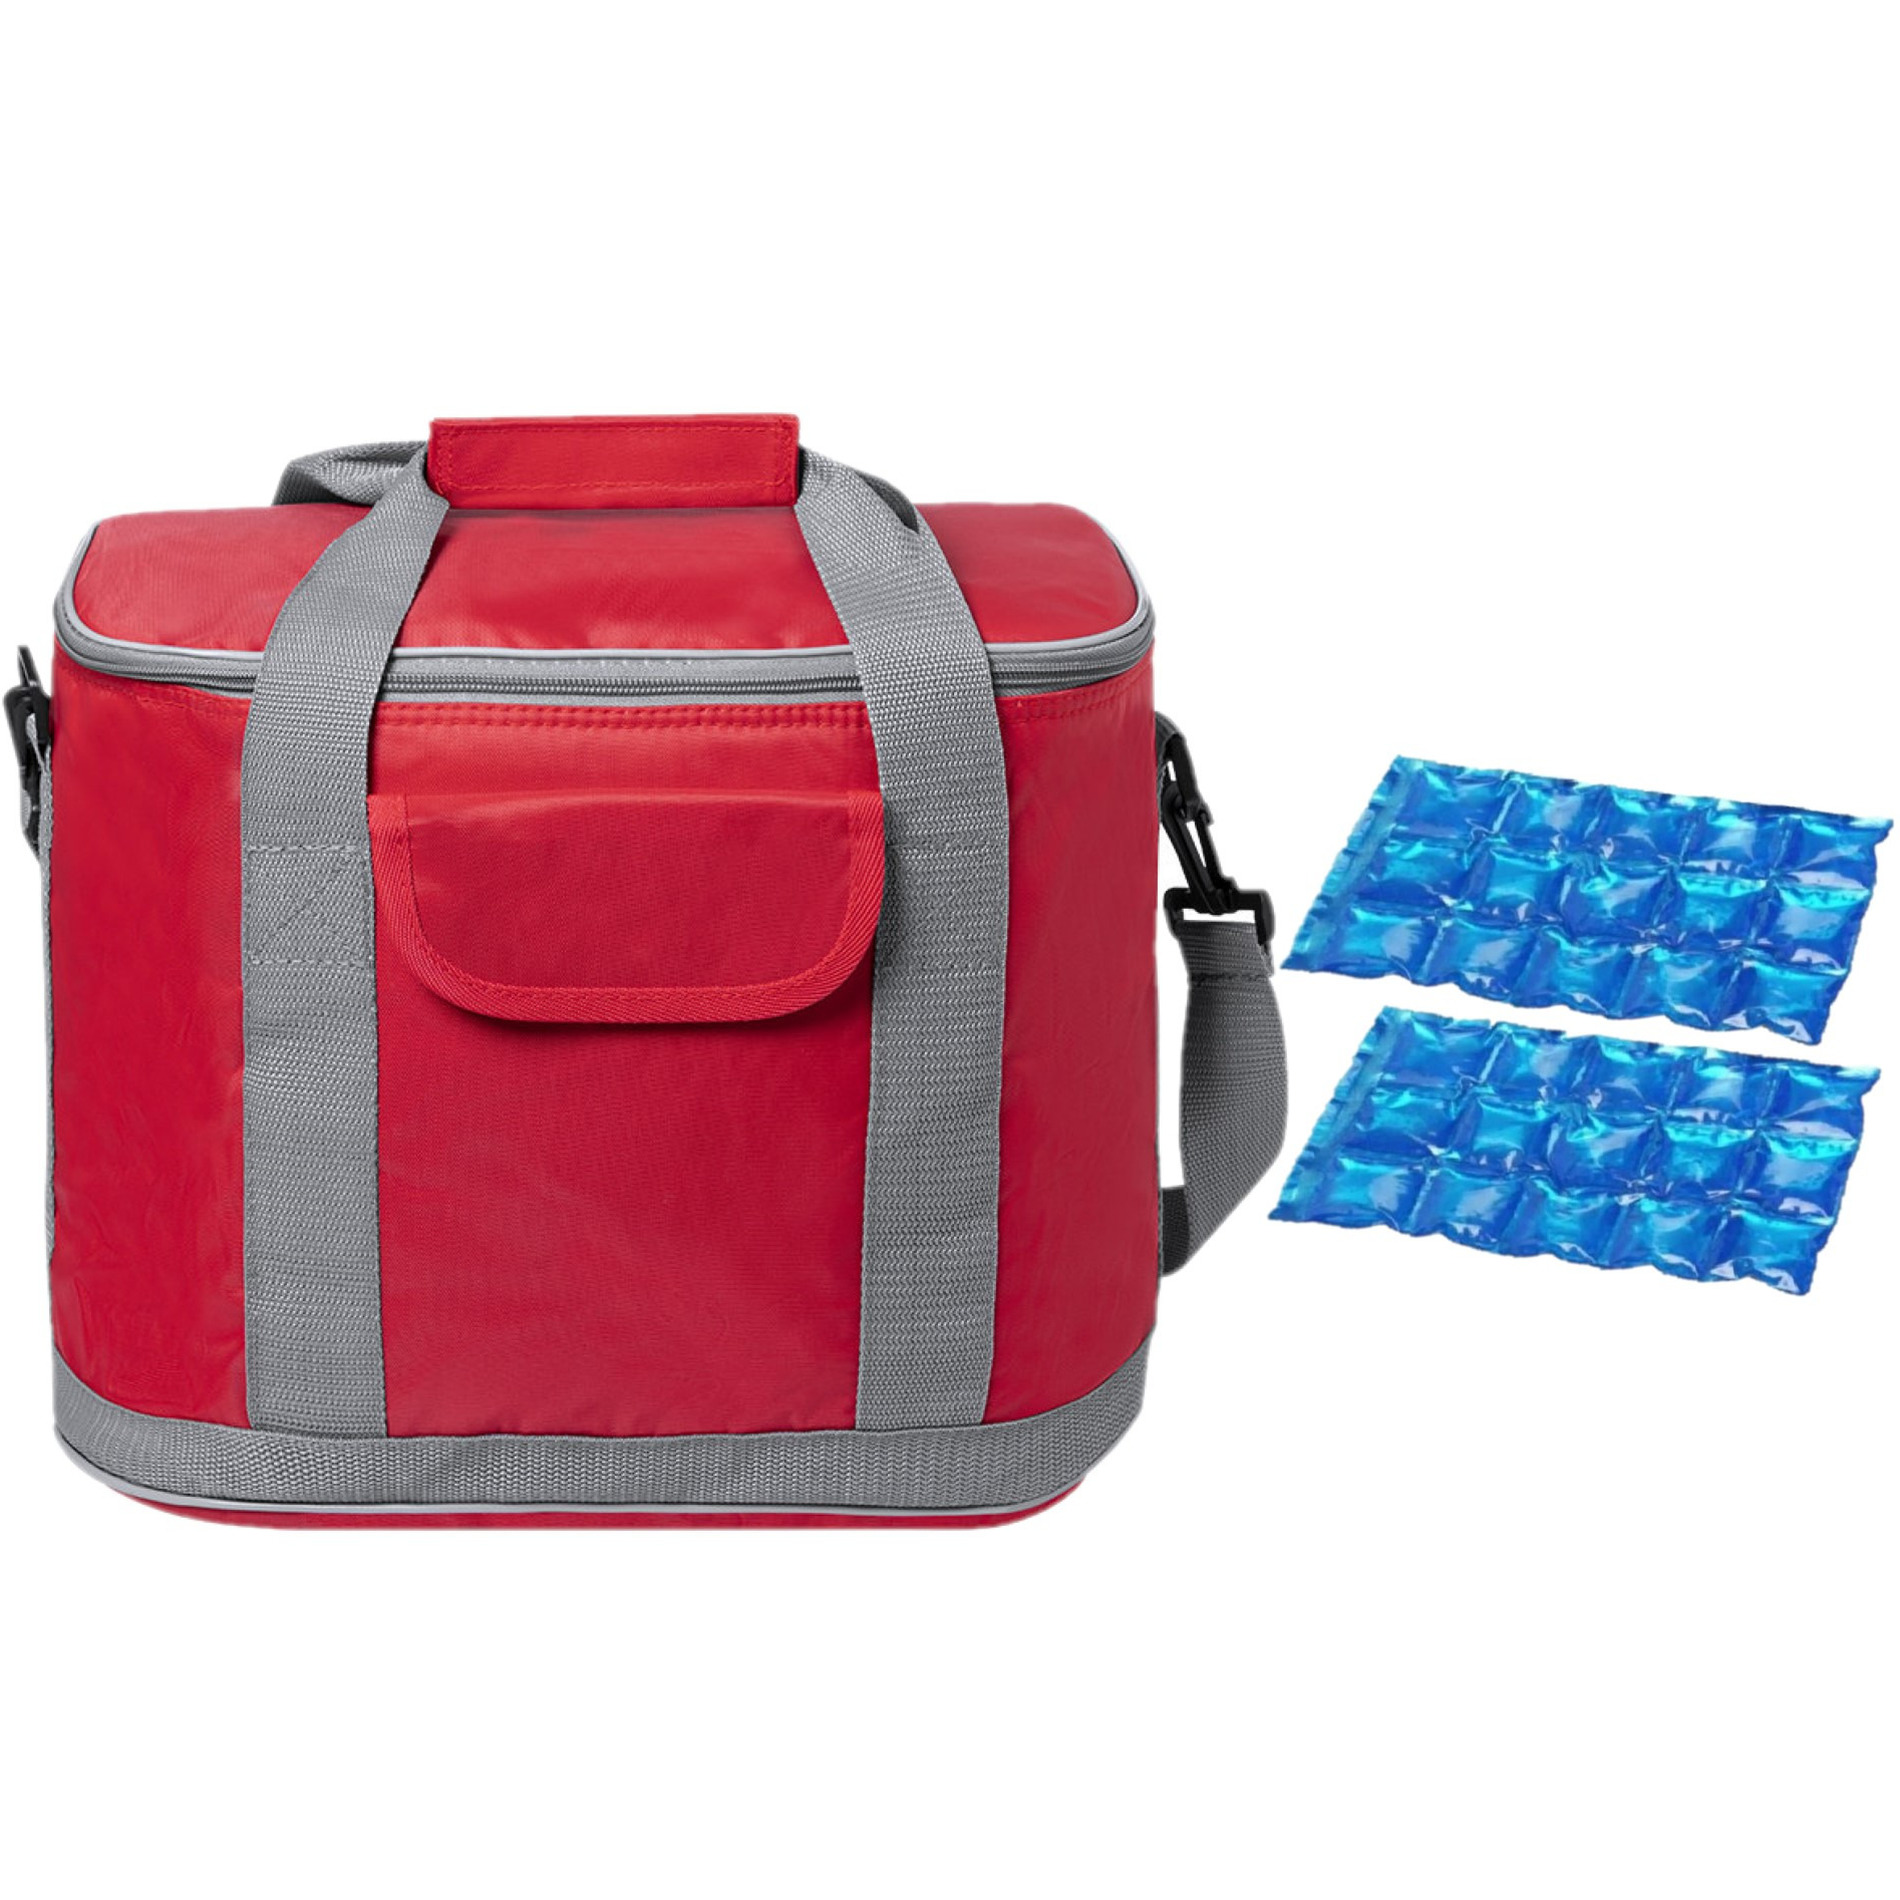 Grote koeltas draagtas-schoudertas rood met 2 stuks flexibele koelelementen 22 liter